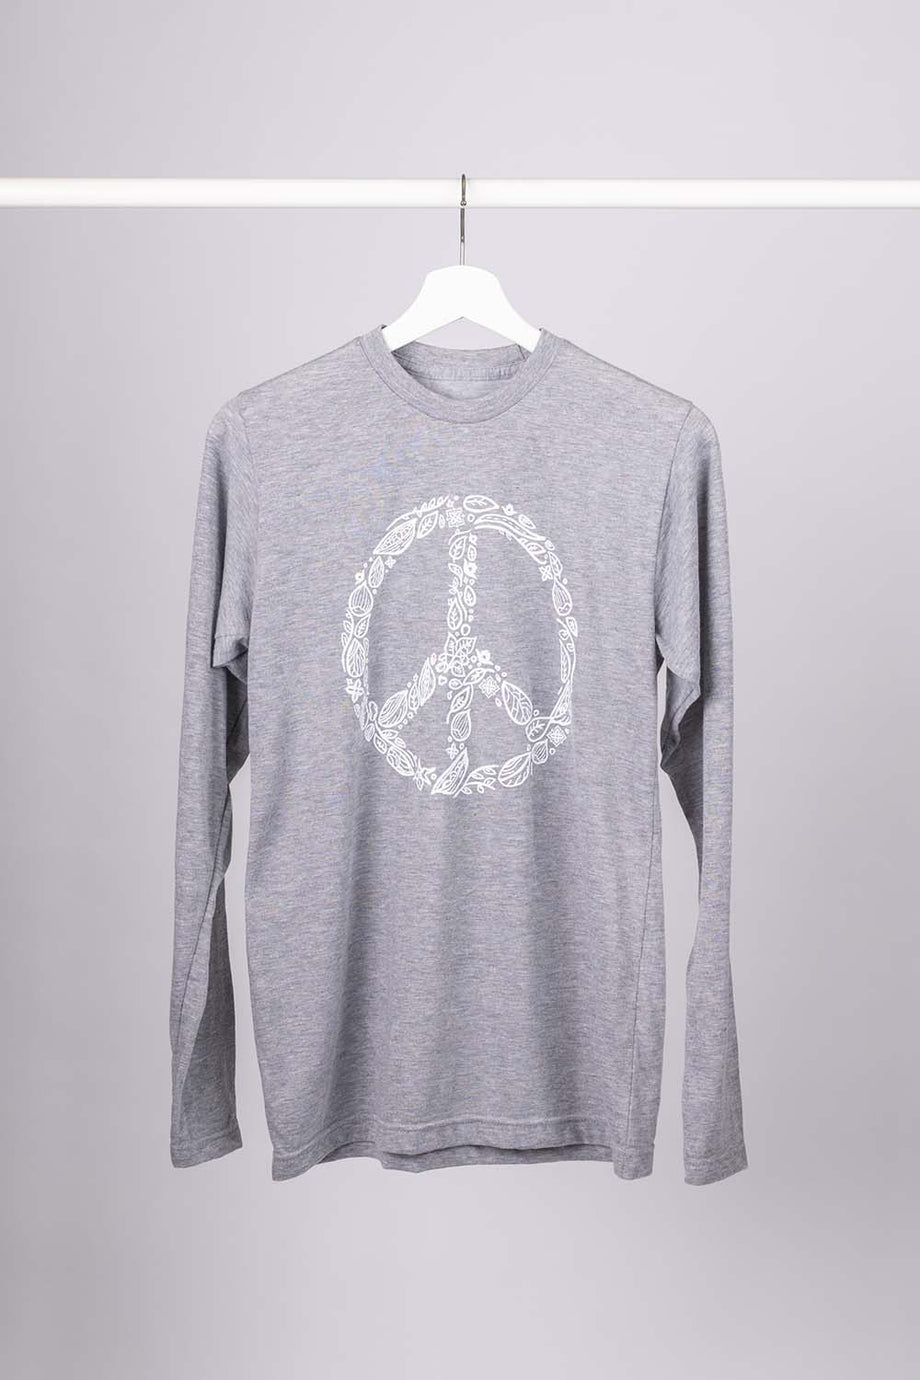 Hanes Teach Peace Long Sleeve T-shirt. Small -  Canada